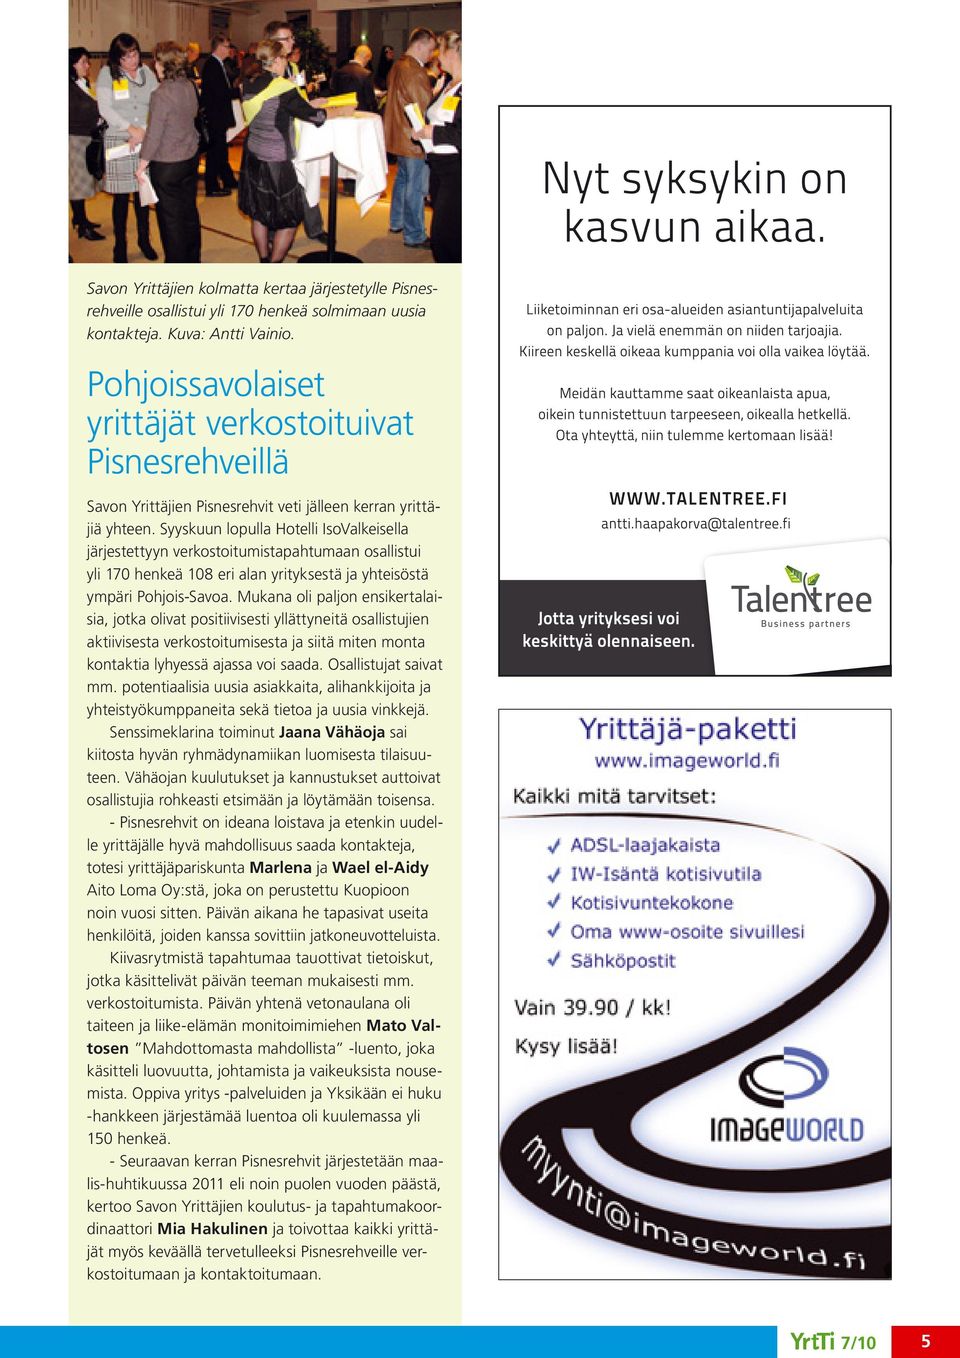 Syyskuun lopulla Hotelli IsoValkeisella järjestettyyn verkostoitumistapahtumaan osallistui yli 170 henkeä 108 eri alan yrityksestä ja yhteisöstä ympäri Pohjois-Savoa.